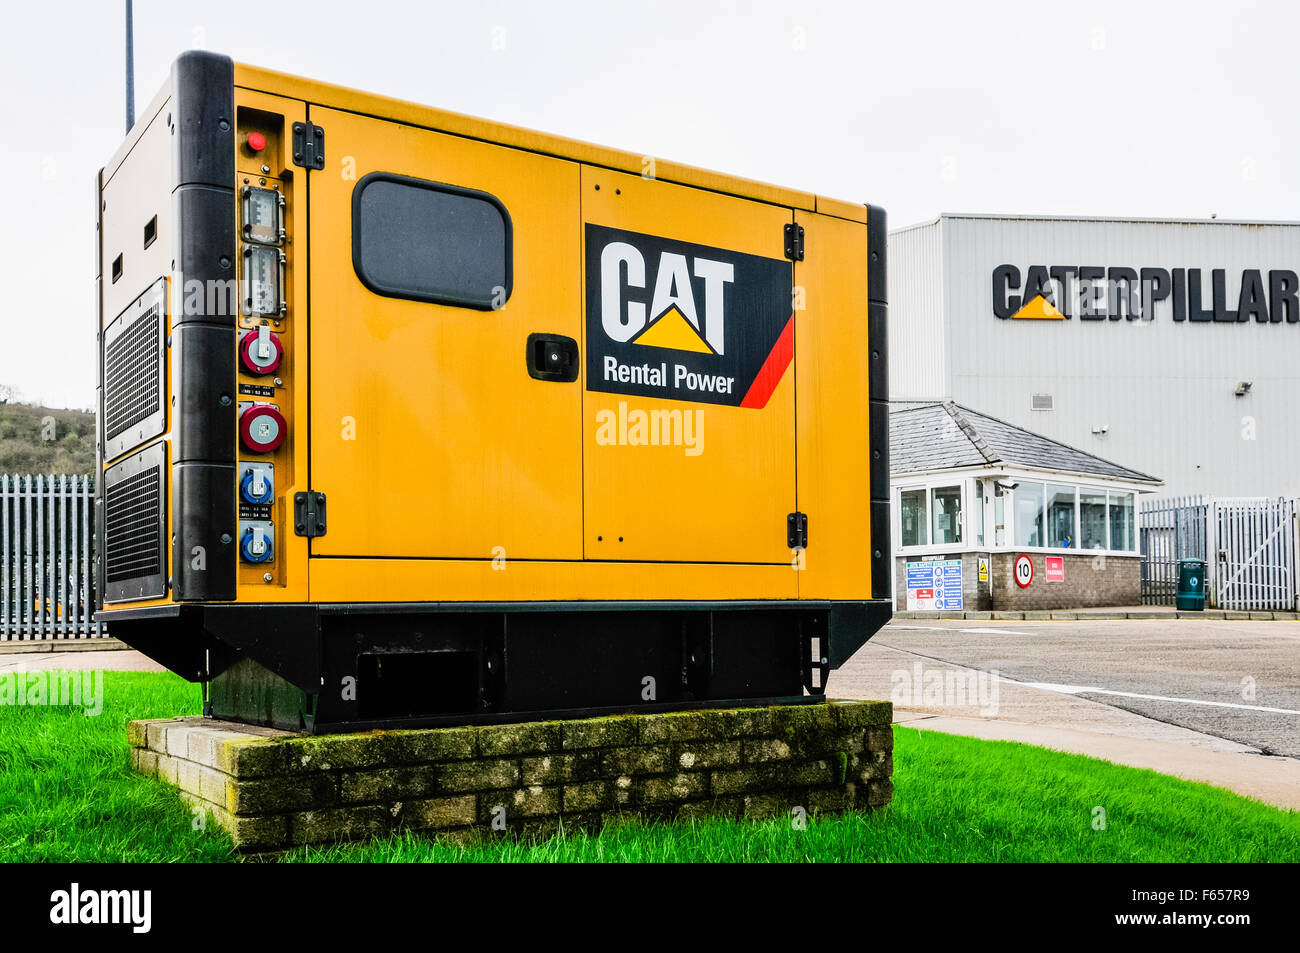 L'Irlanda del Nord. 12 Novembre, 2015. Caterpillar in fabbrica Monkstown, Newtownabbey, precedentemente FG Wilson, annunciare la perdita di 100 posti di lavoro su tre siti in Irlanda del Nord. Credito: Stephen Barnes/Alamy Live News Foto Stock